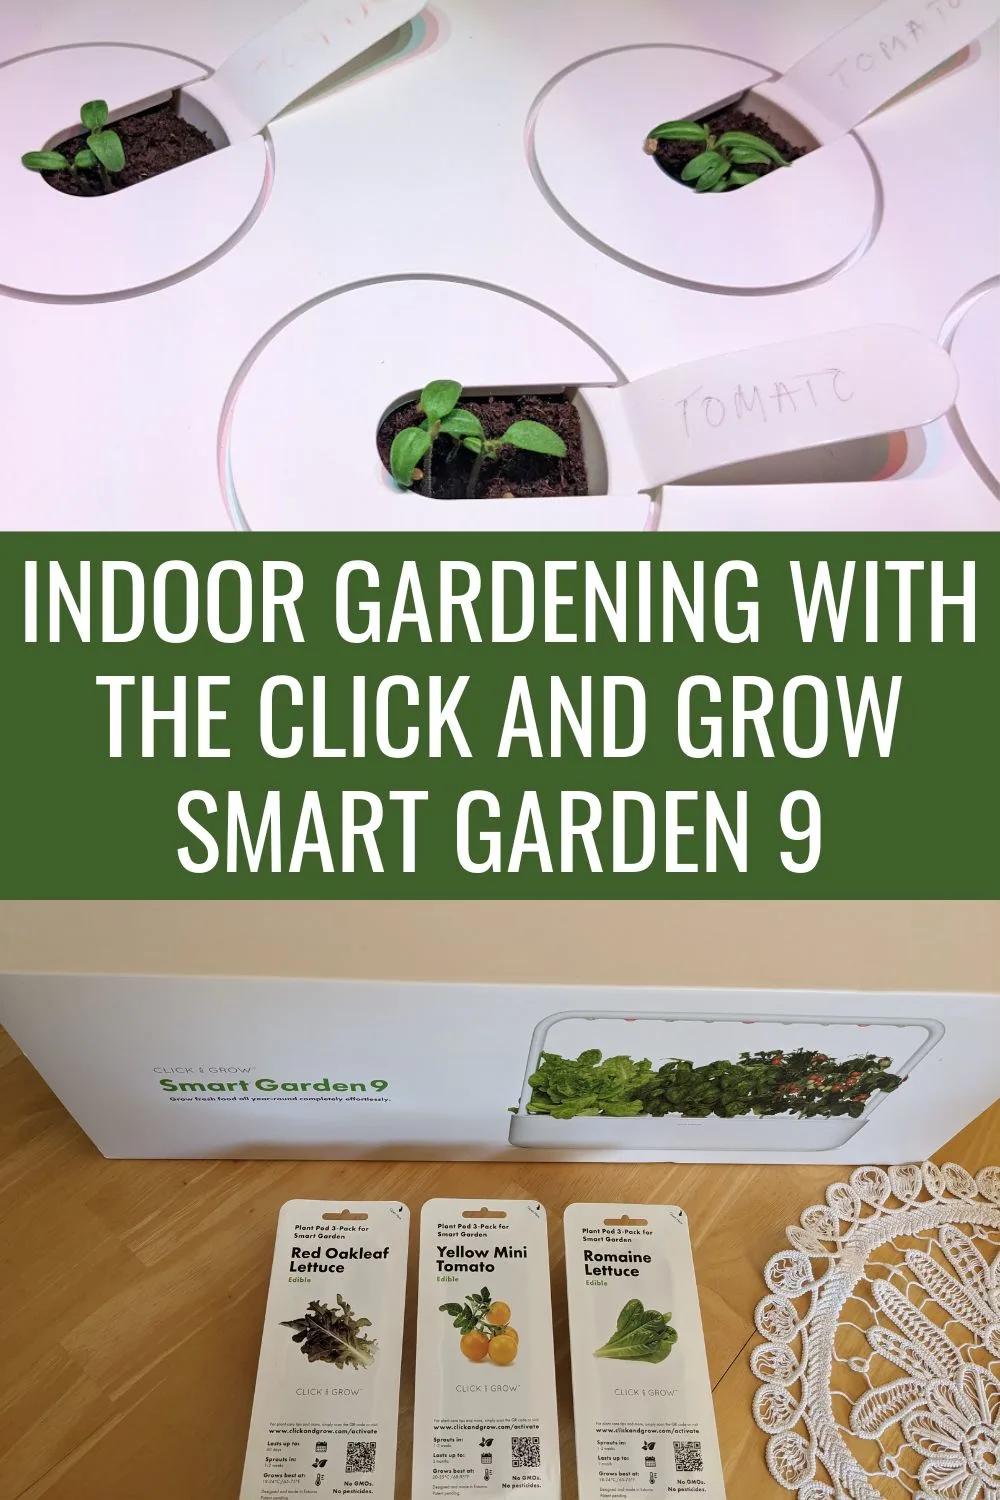 Indoor Gardening With The Click and Grow Smart Garden 9.